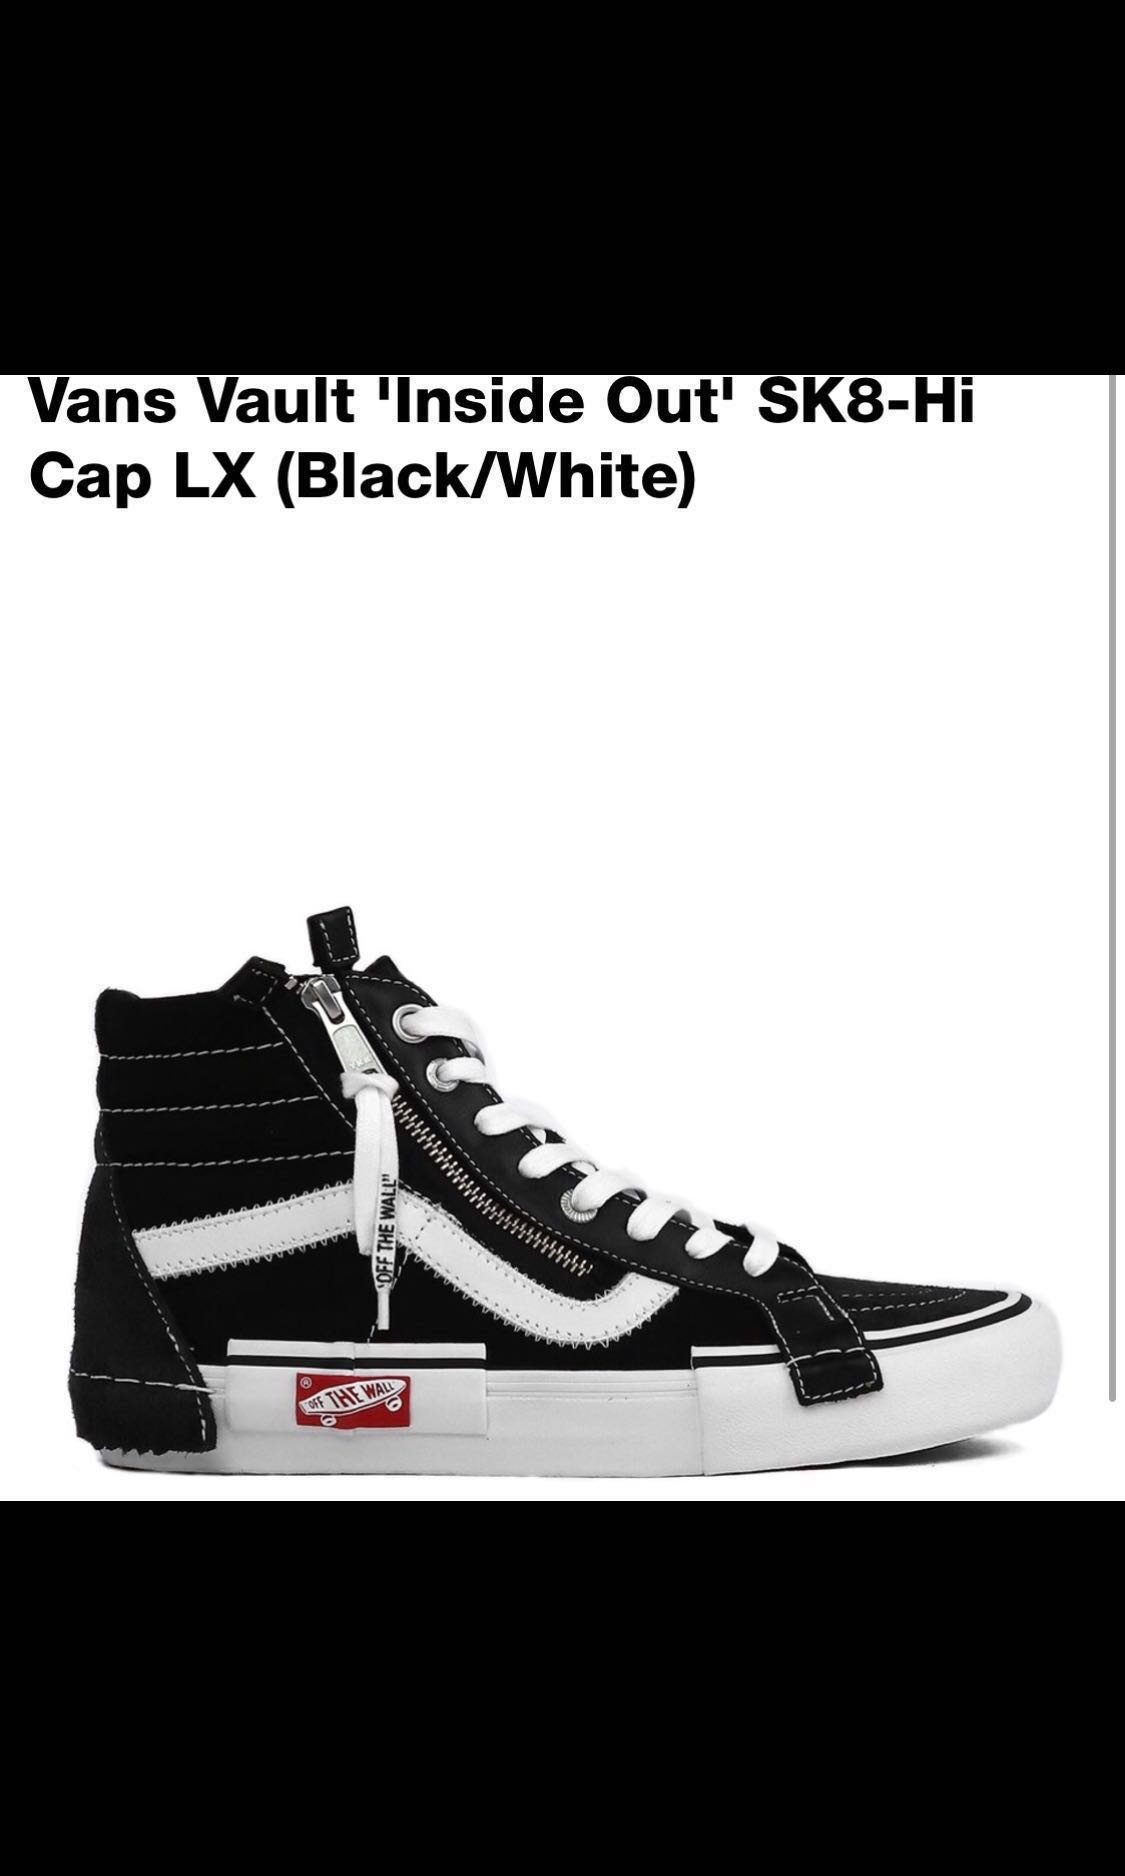 Vans Vault 'Inside Out' SK8-Hi Cap LX 